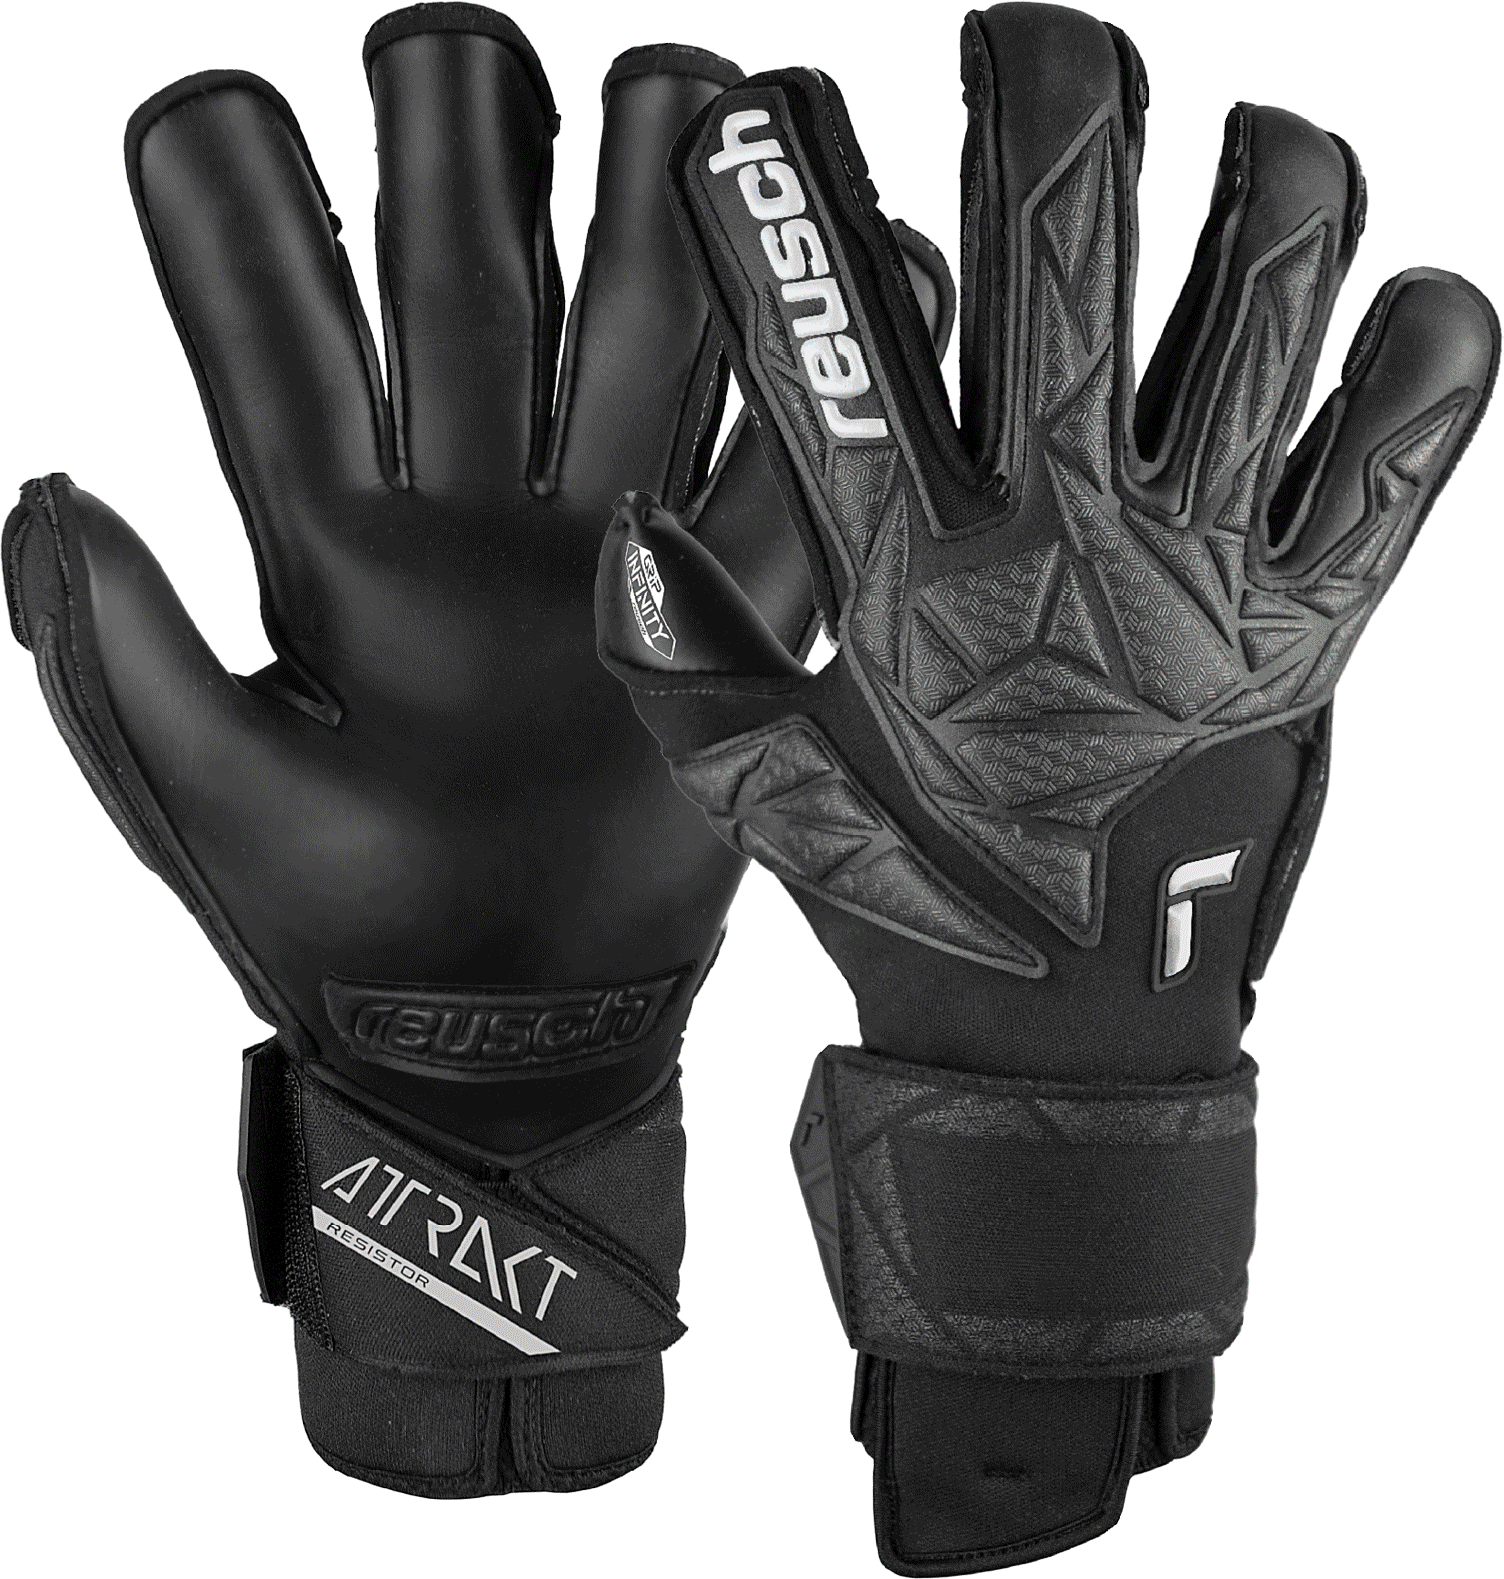 Goalkeeper's Reusch Attrakt Infinity Resistor Goalkeeper Gloves